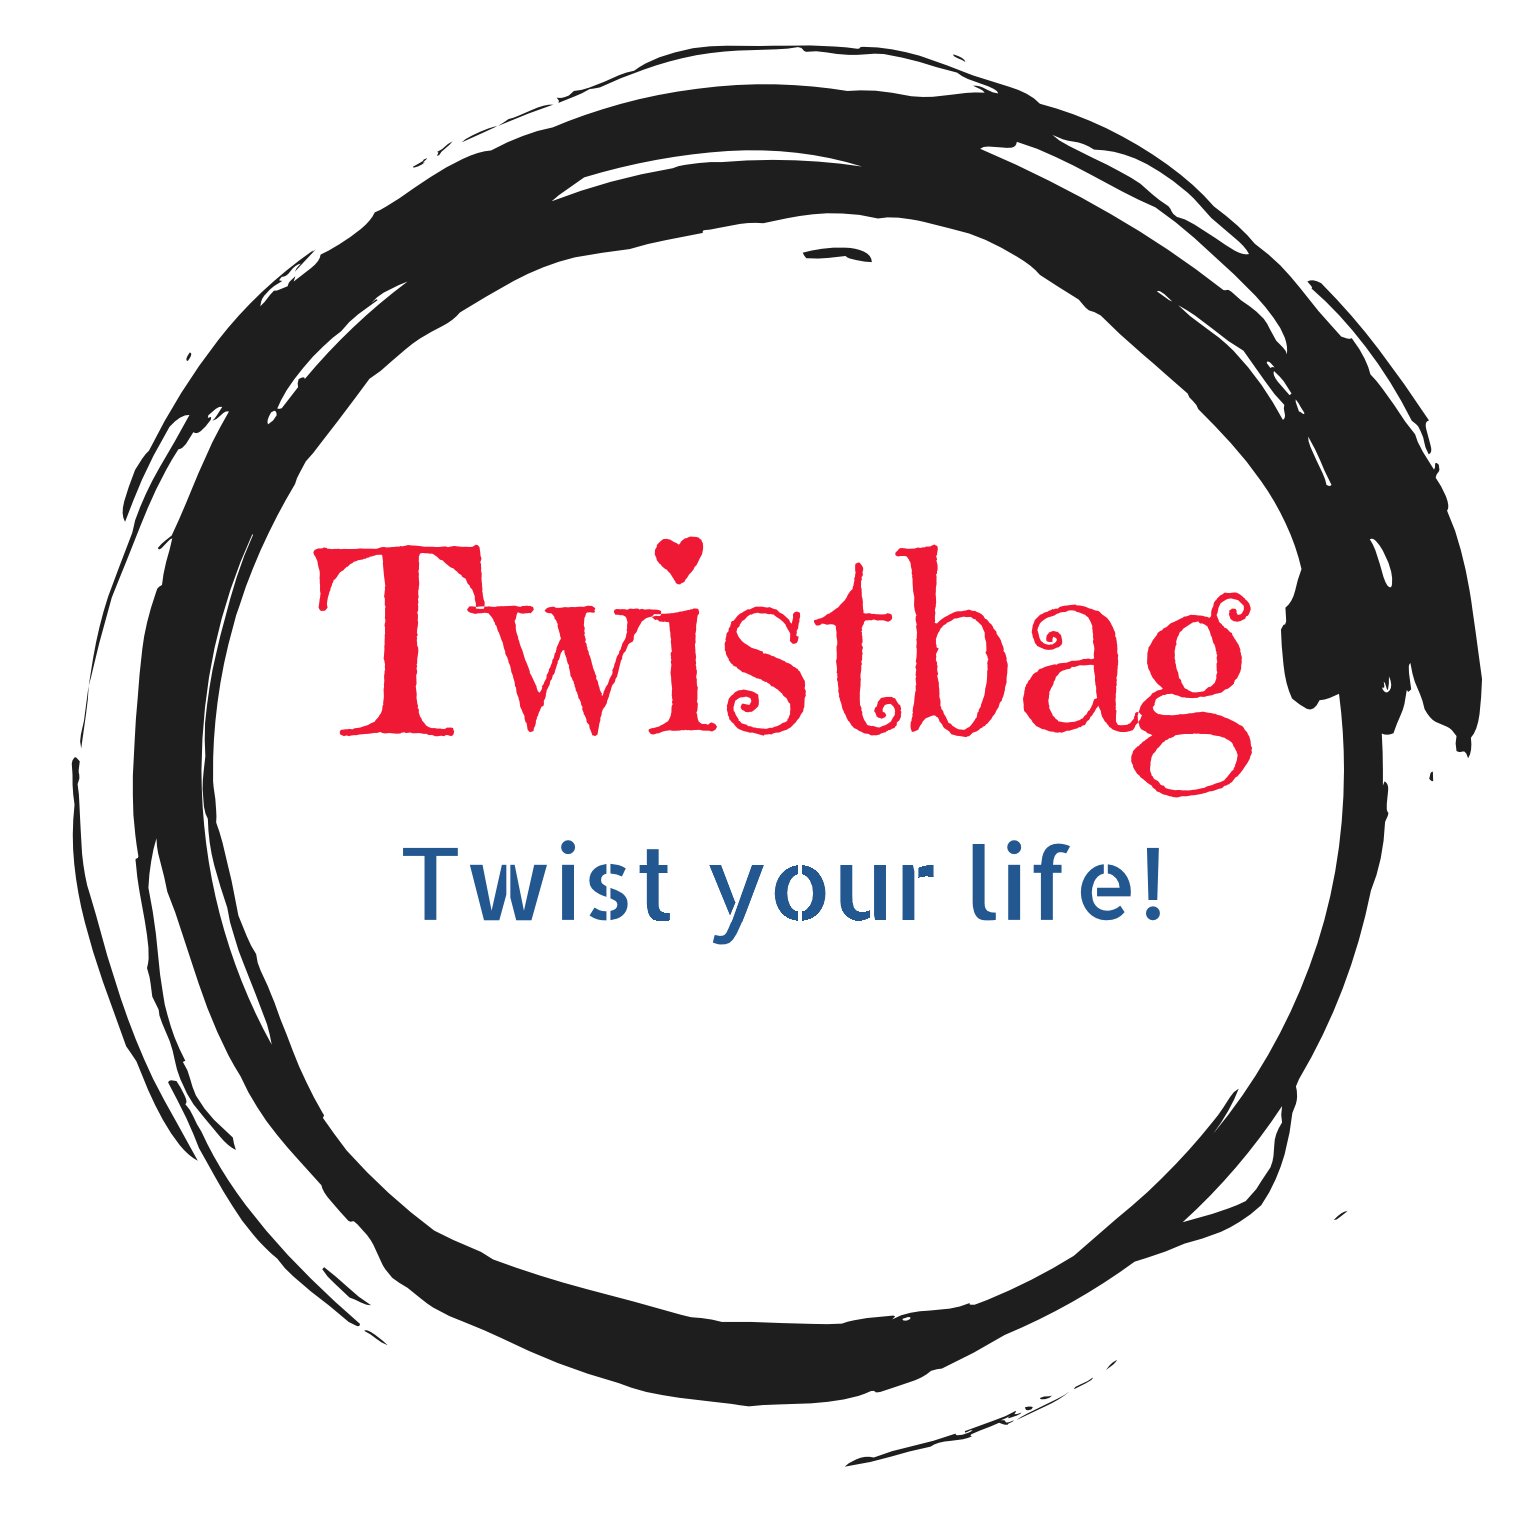 TwistBag es una maleta cilíndrica que enrolla la ropa en su interior en bolsas protectoras y consigue menos arrugas en nuestras prendas.
Travellstyle